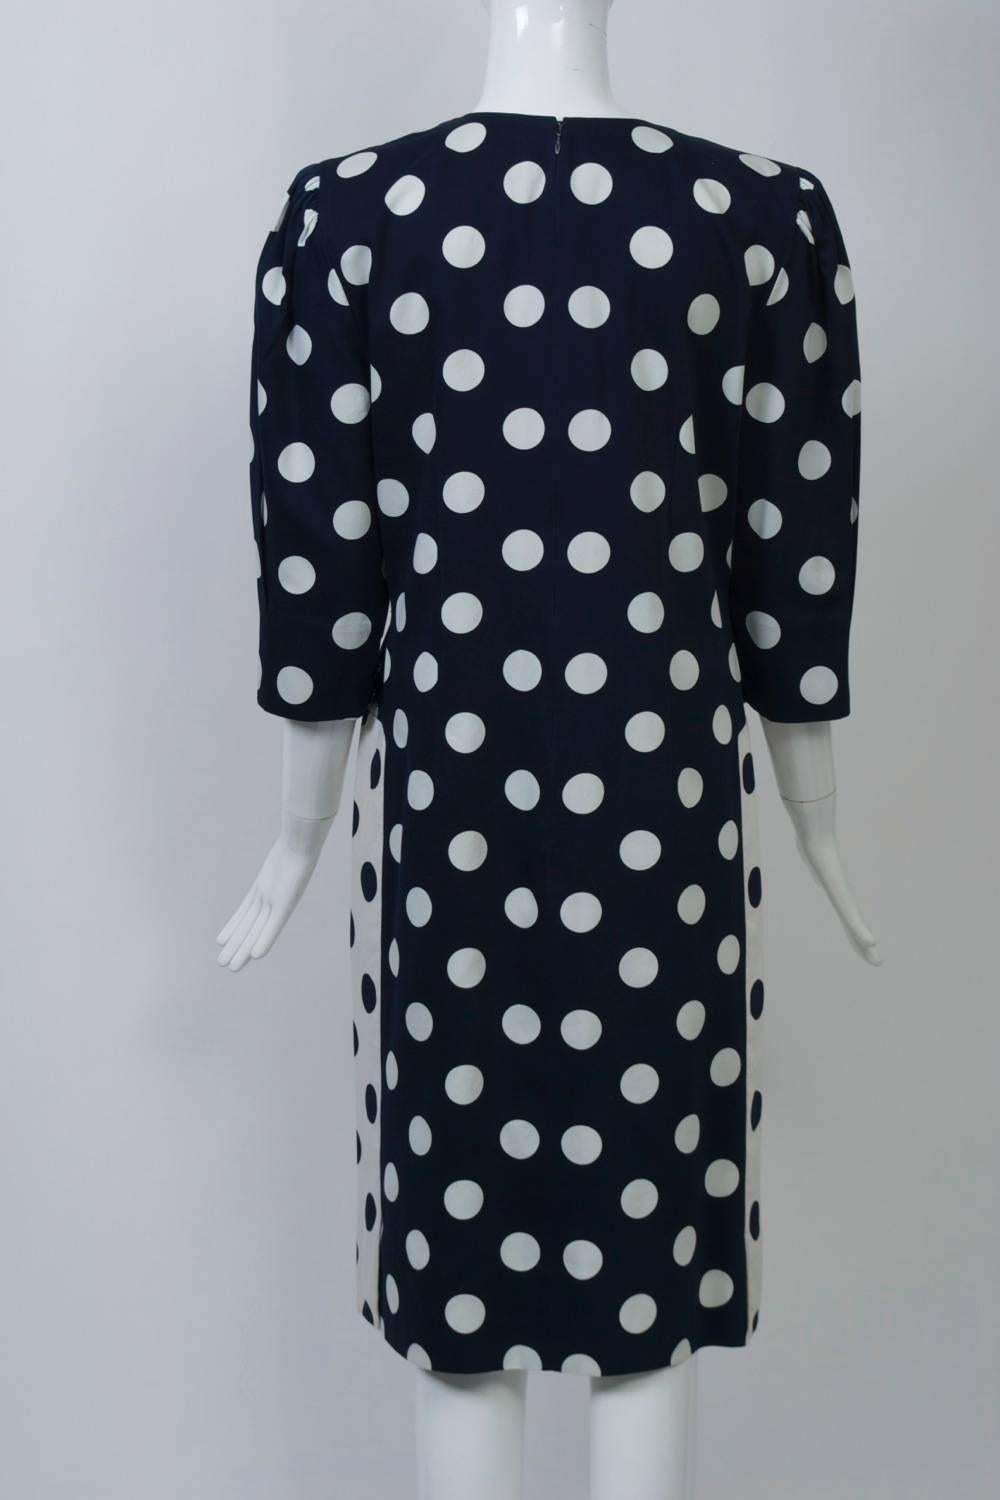 Women's Pauline Trigére Polka Dot Dress For Sale